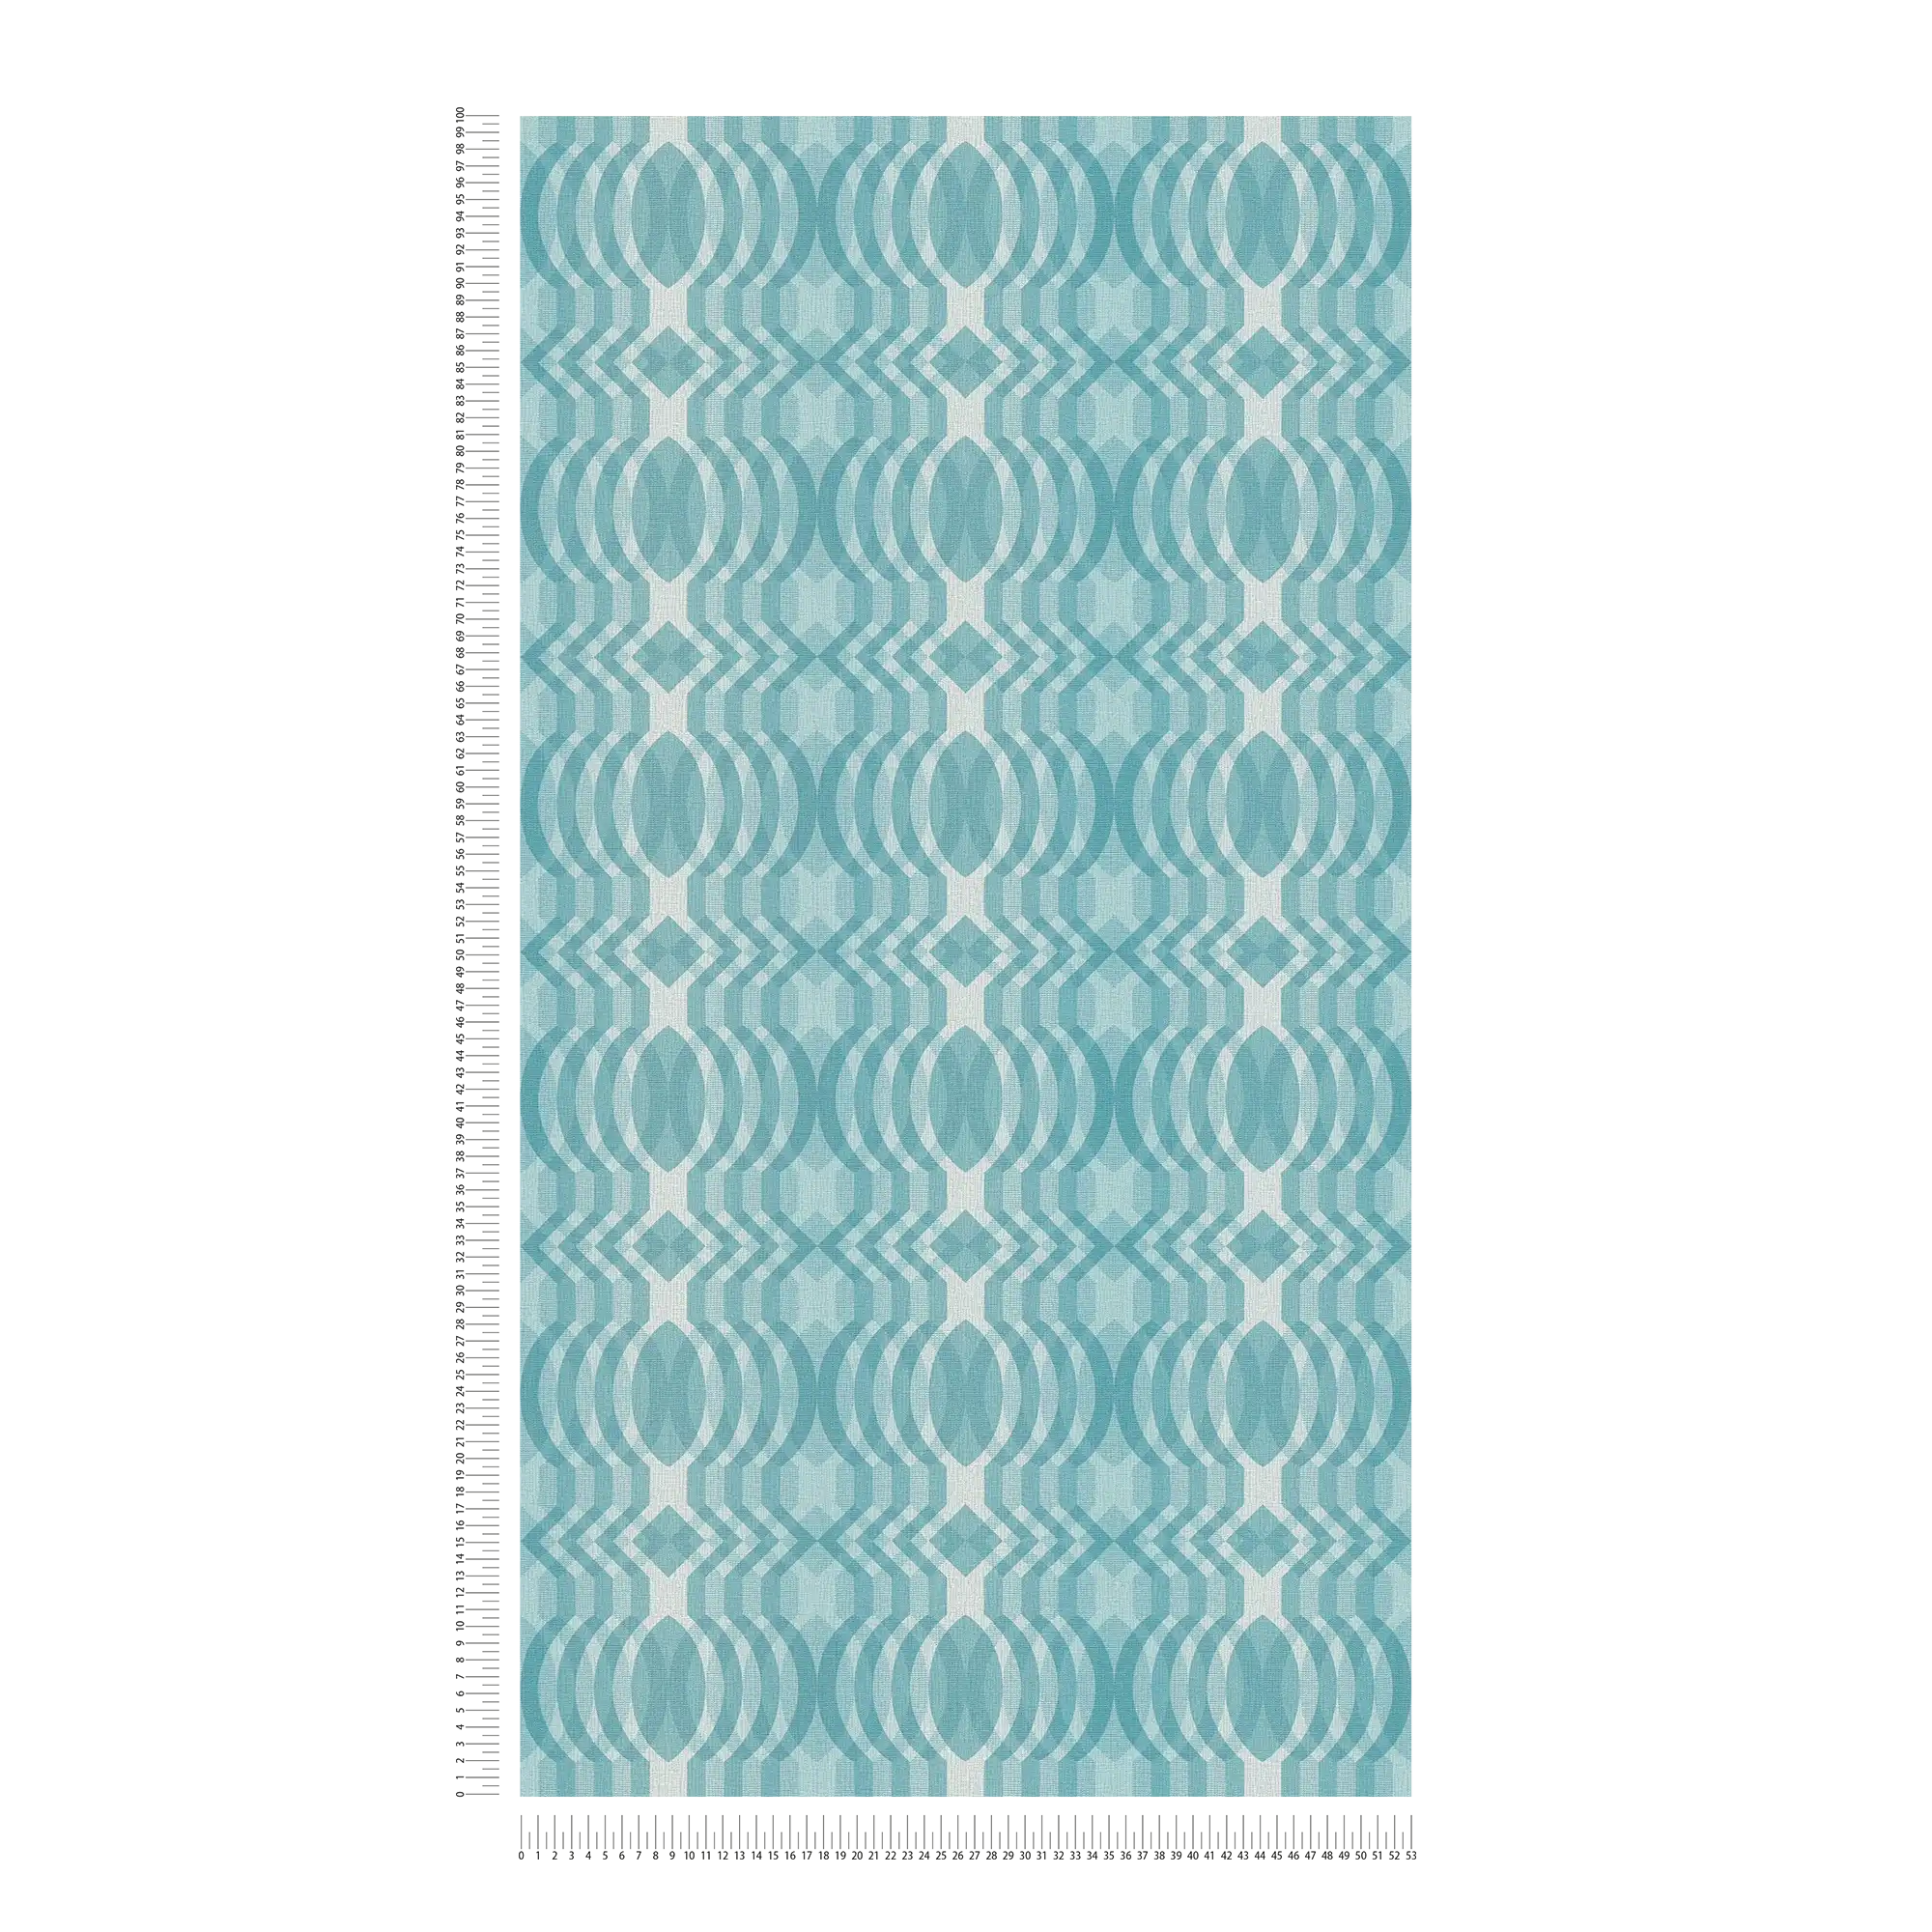             papier peint en papier rétro à motifs géométriques - bleu, crème, blanc
        